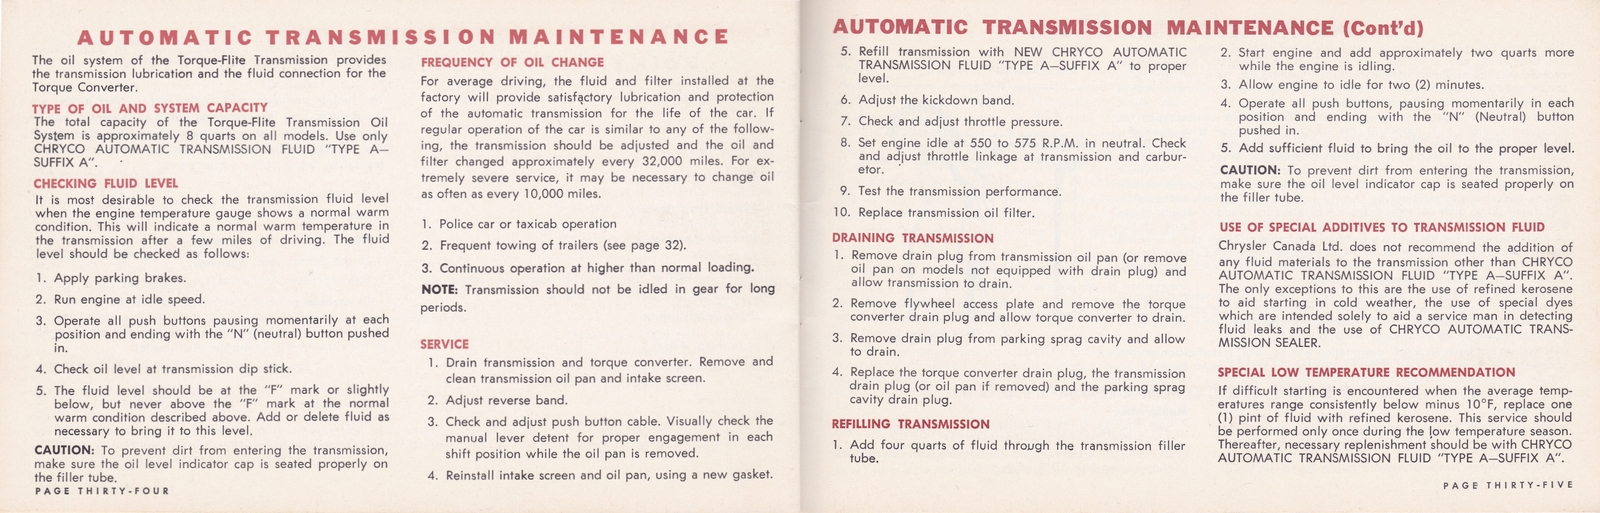 n_1964 Chrysler Owner's Manual (Cdn)-34-35.jpg